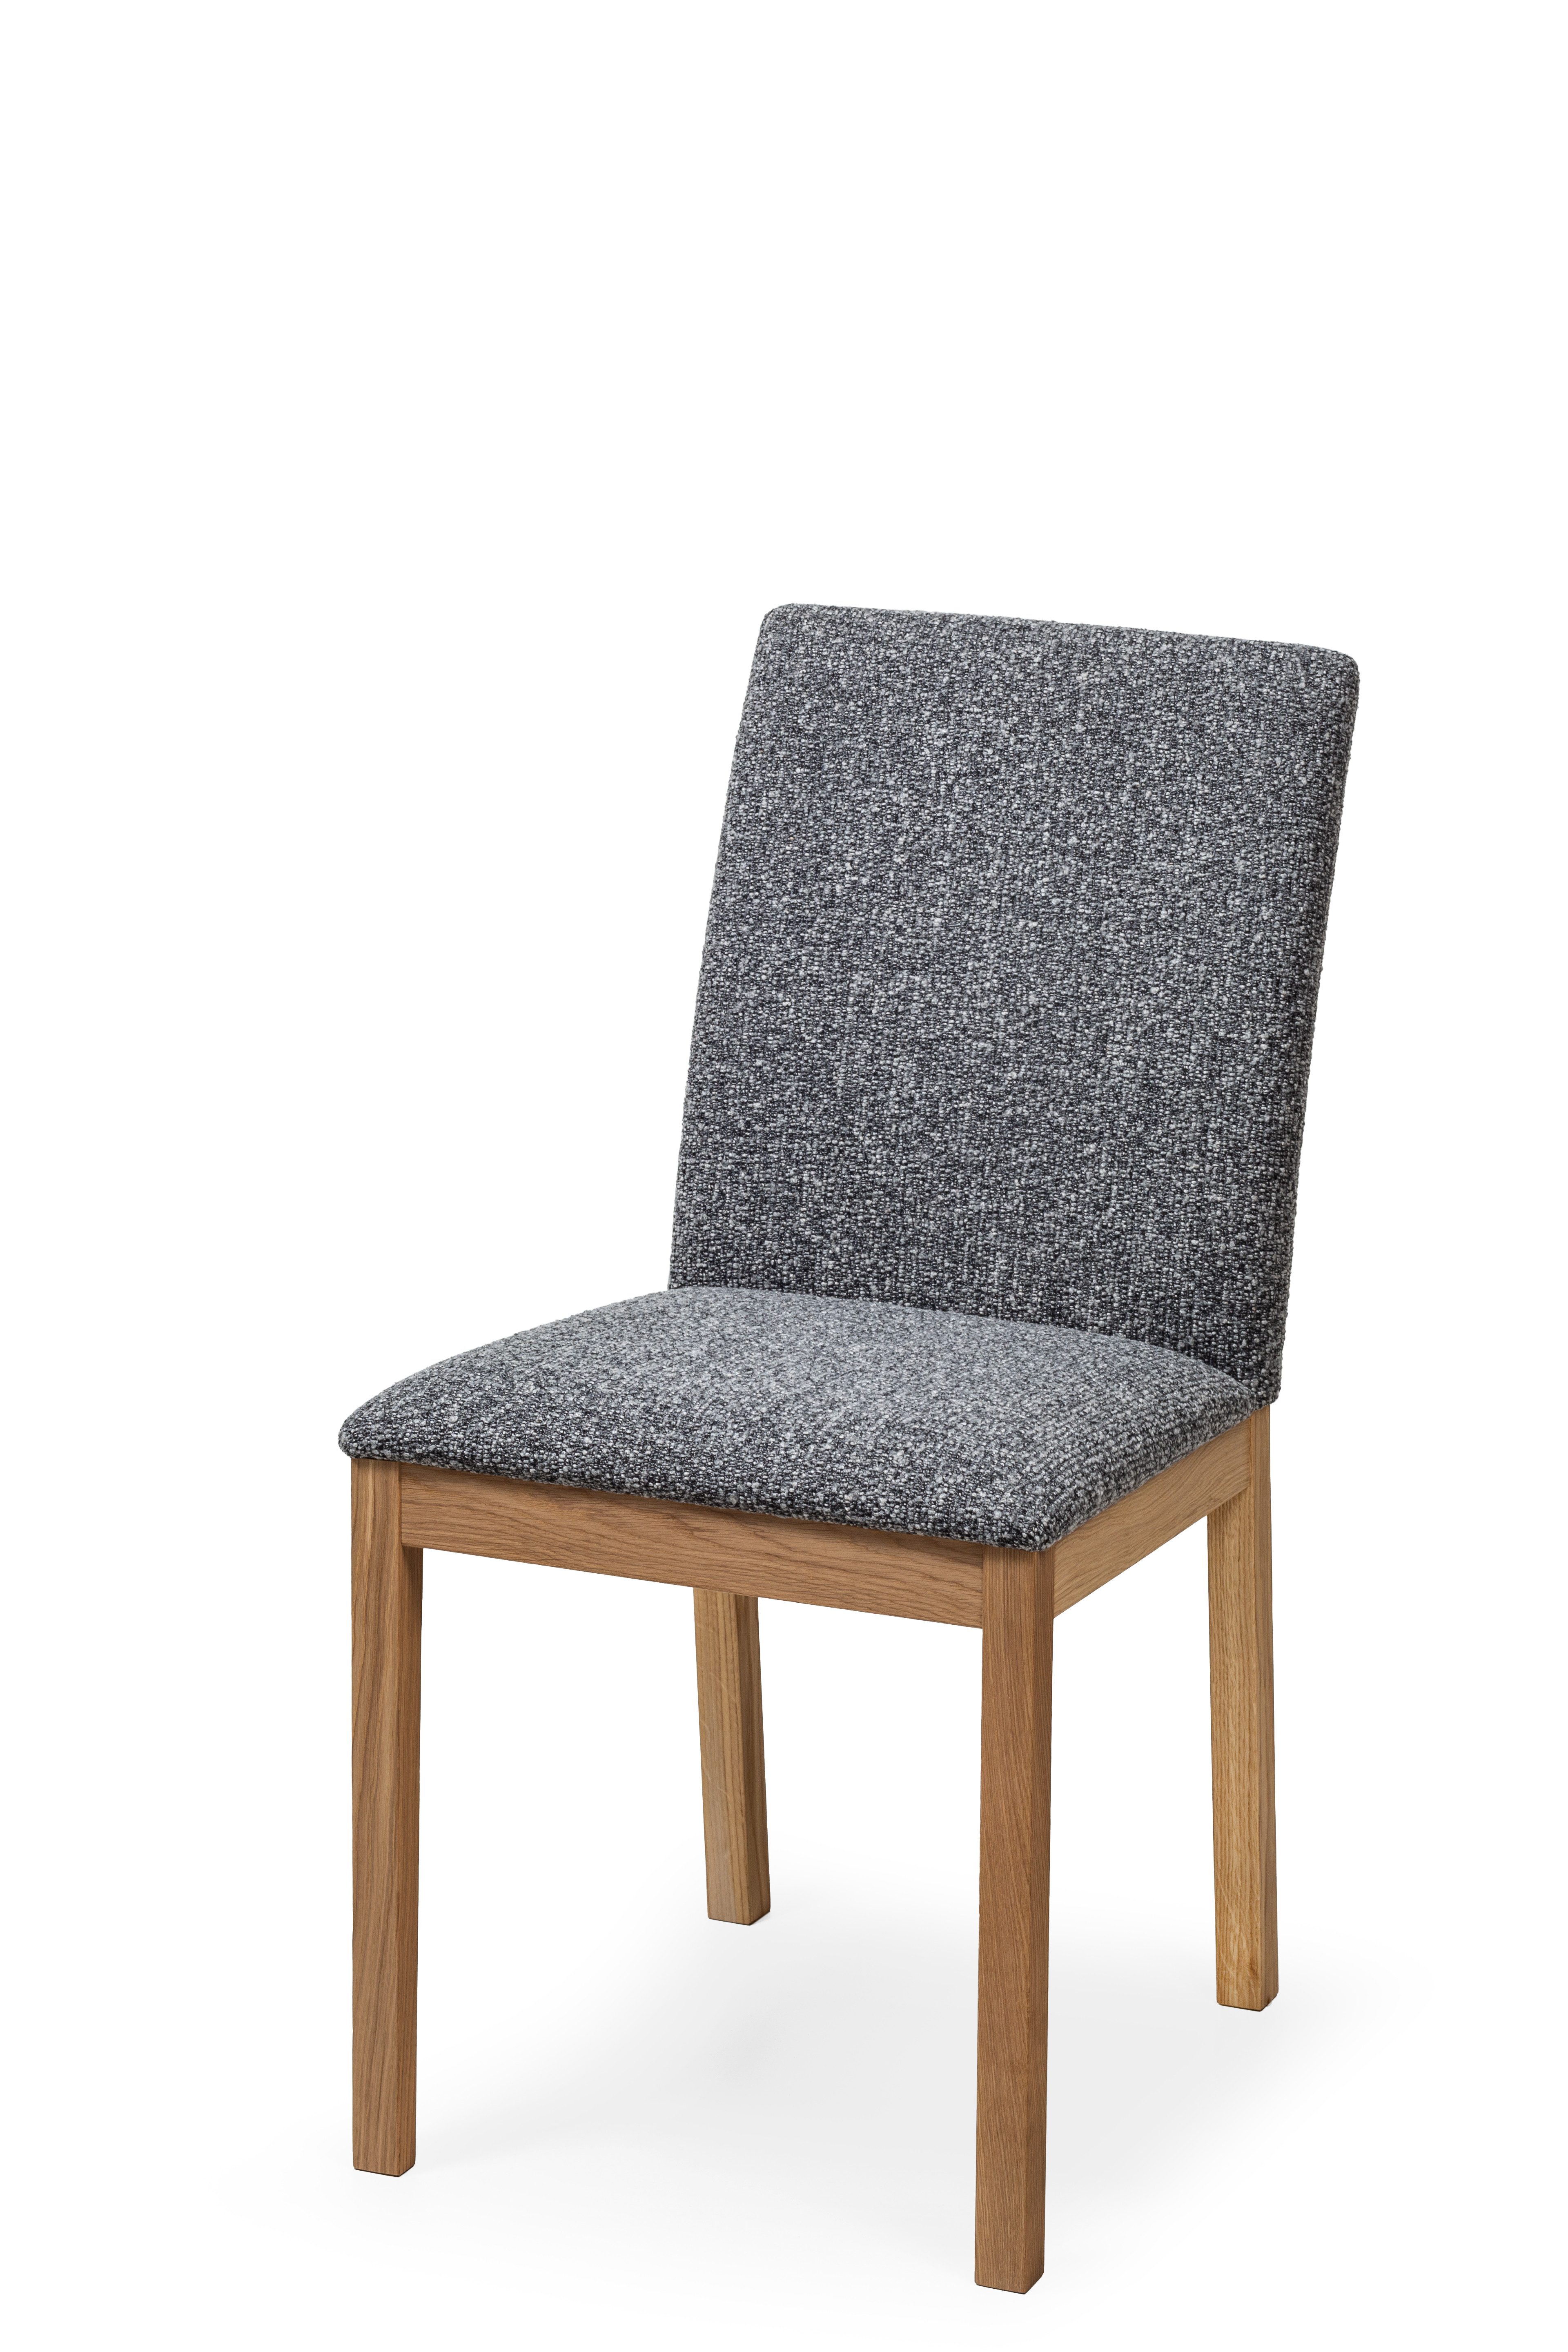 Woodek Design Esszimmerstuhl BERG, gepolstert mit Monet Anthracite Stoff (dunkel) (eleganter und robuster Stuhl, 1 St), hergestellt aus massivem Eichenholz